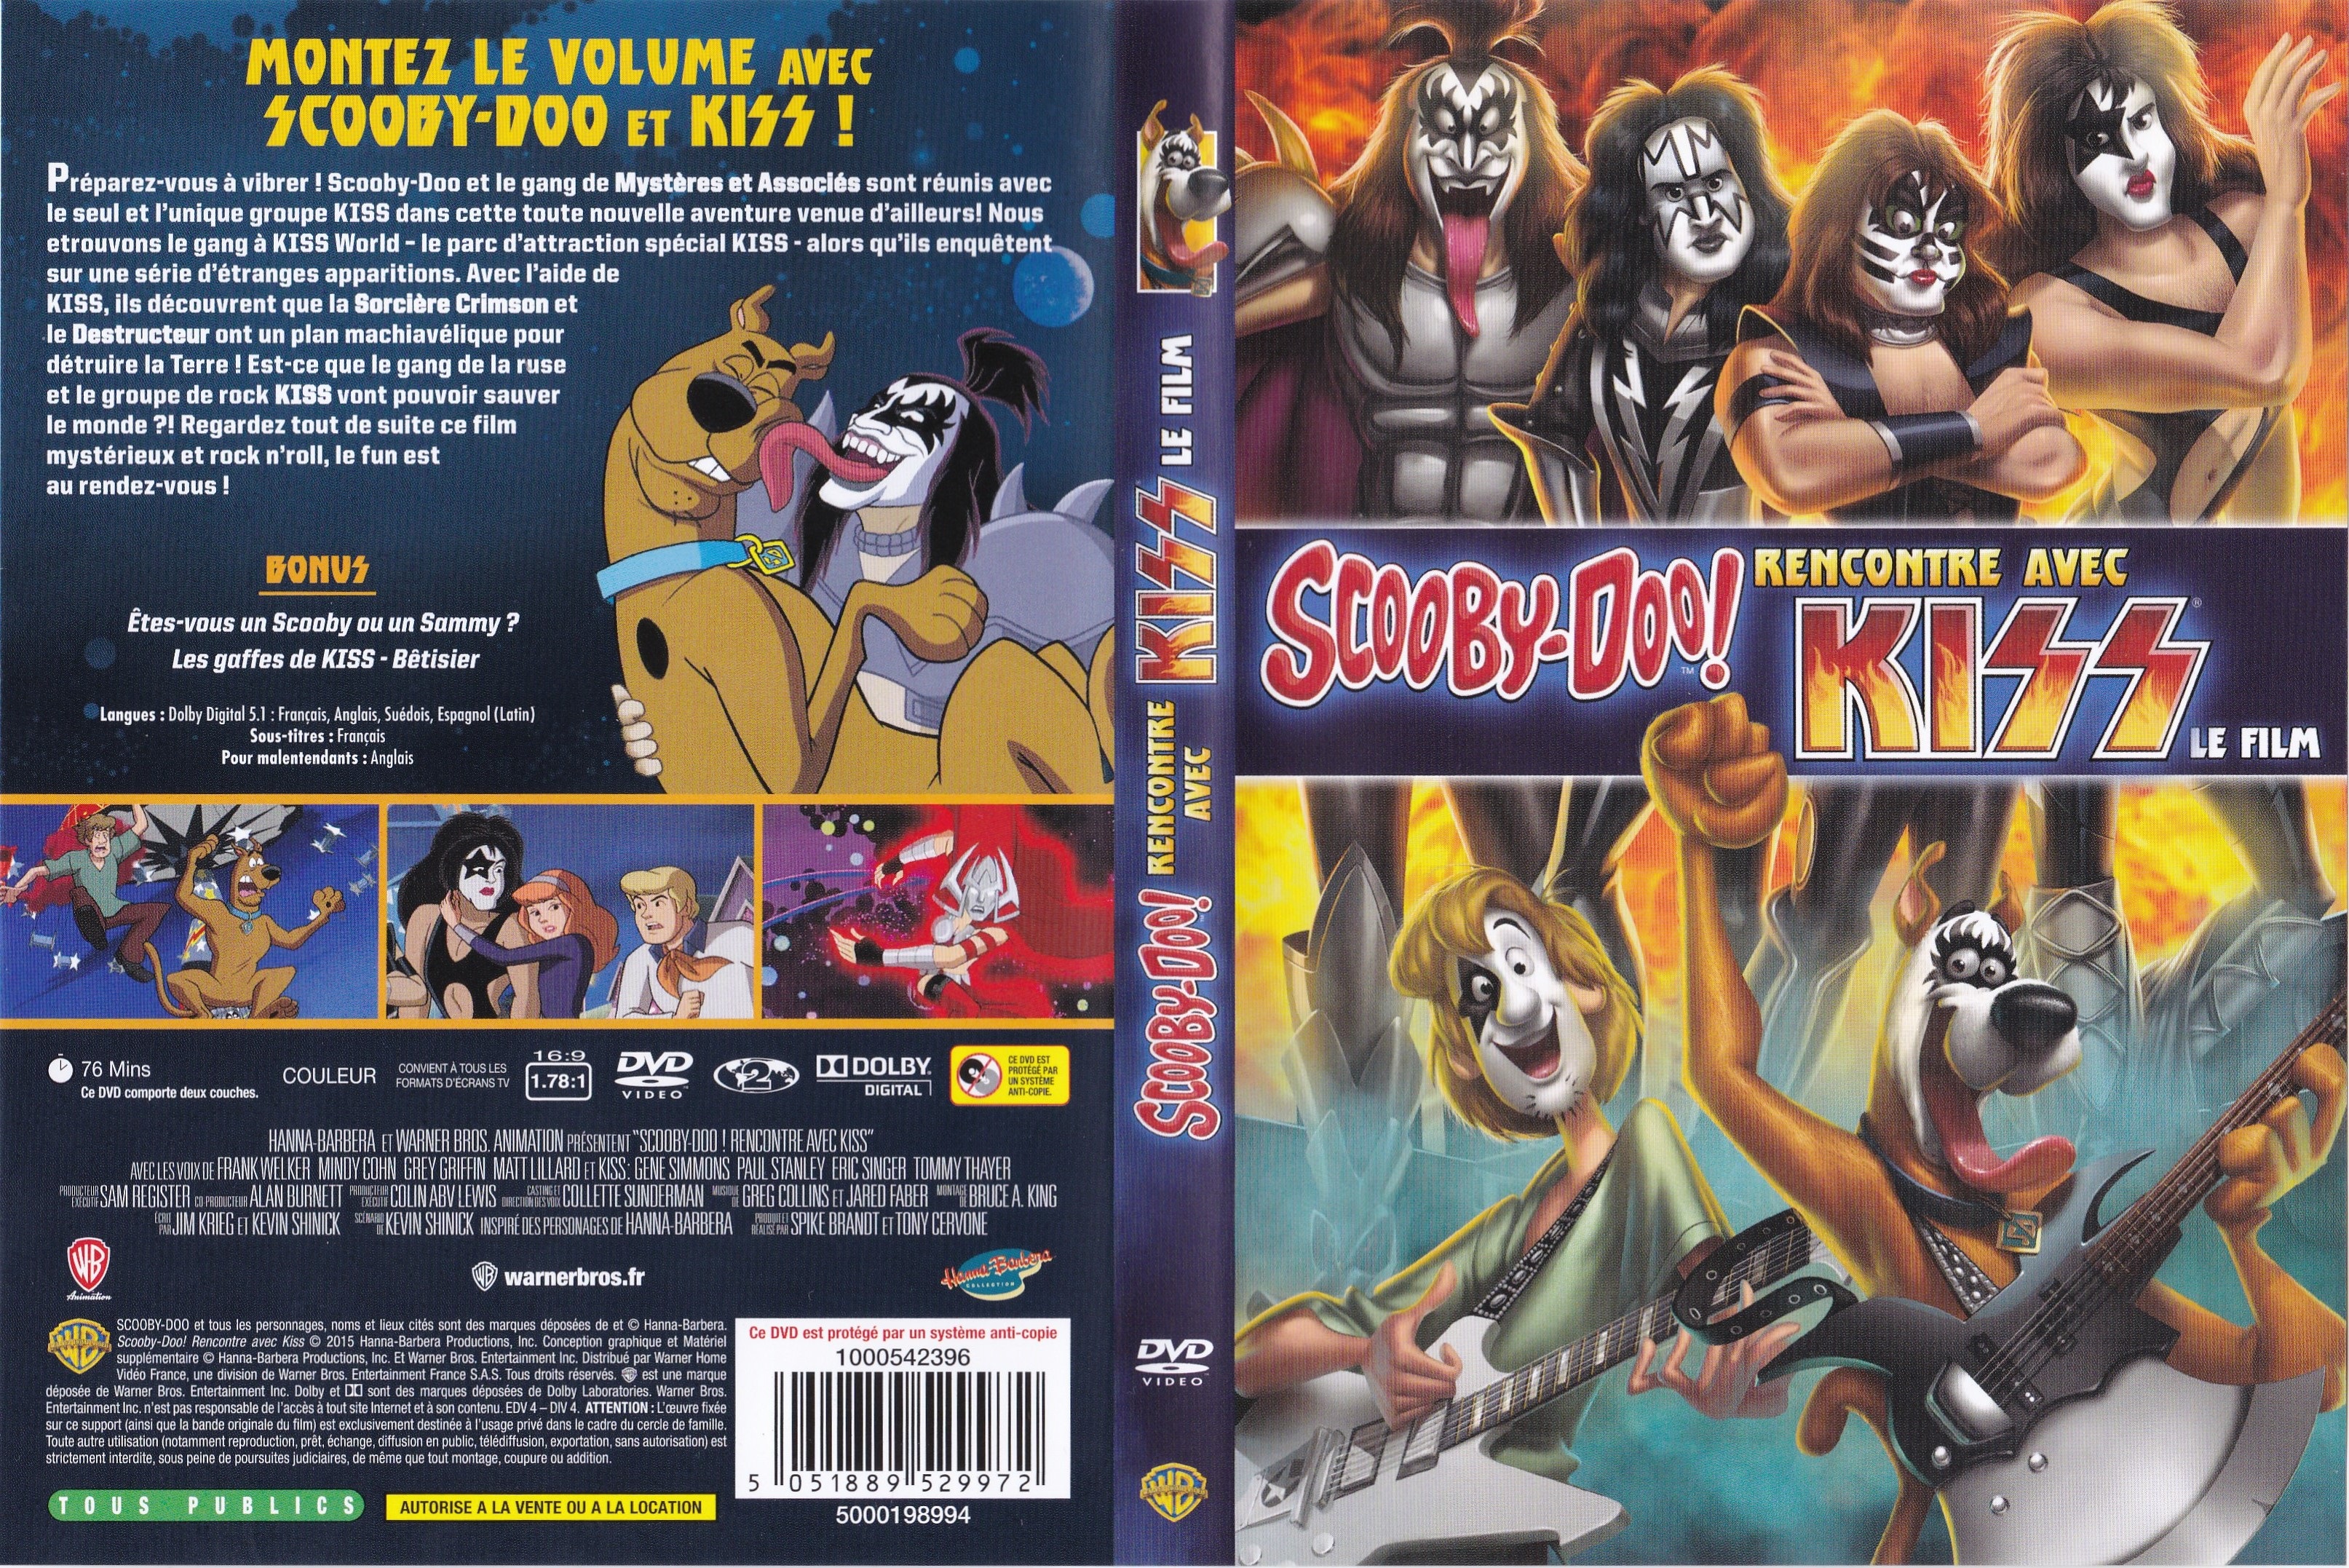 Jaquette DVD Scooby-Doo! Rencontre avec Kiss